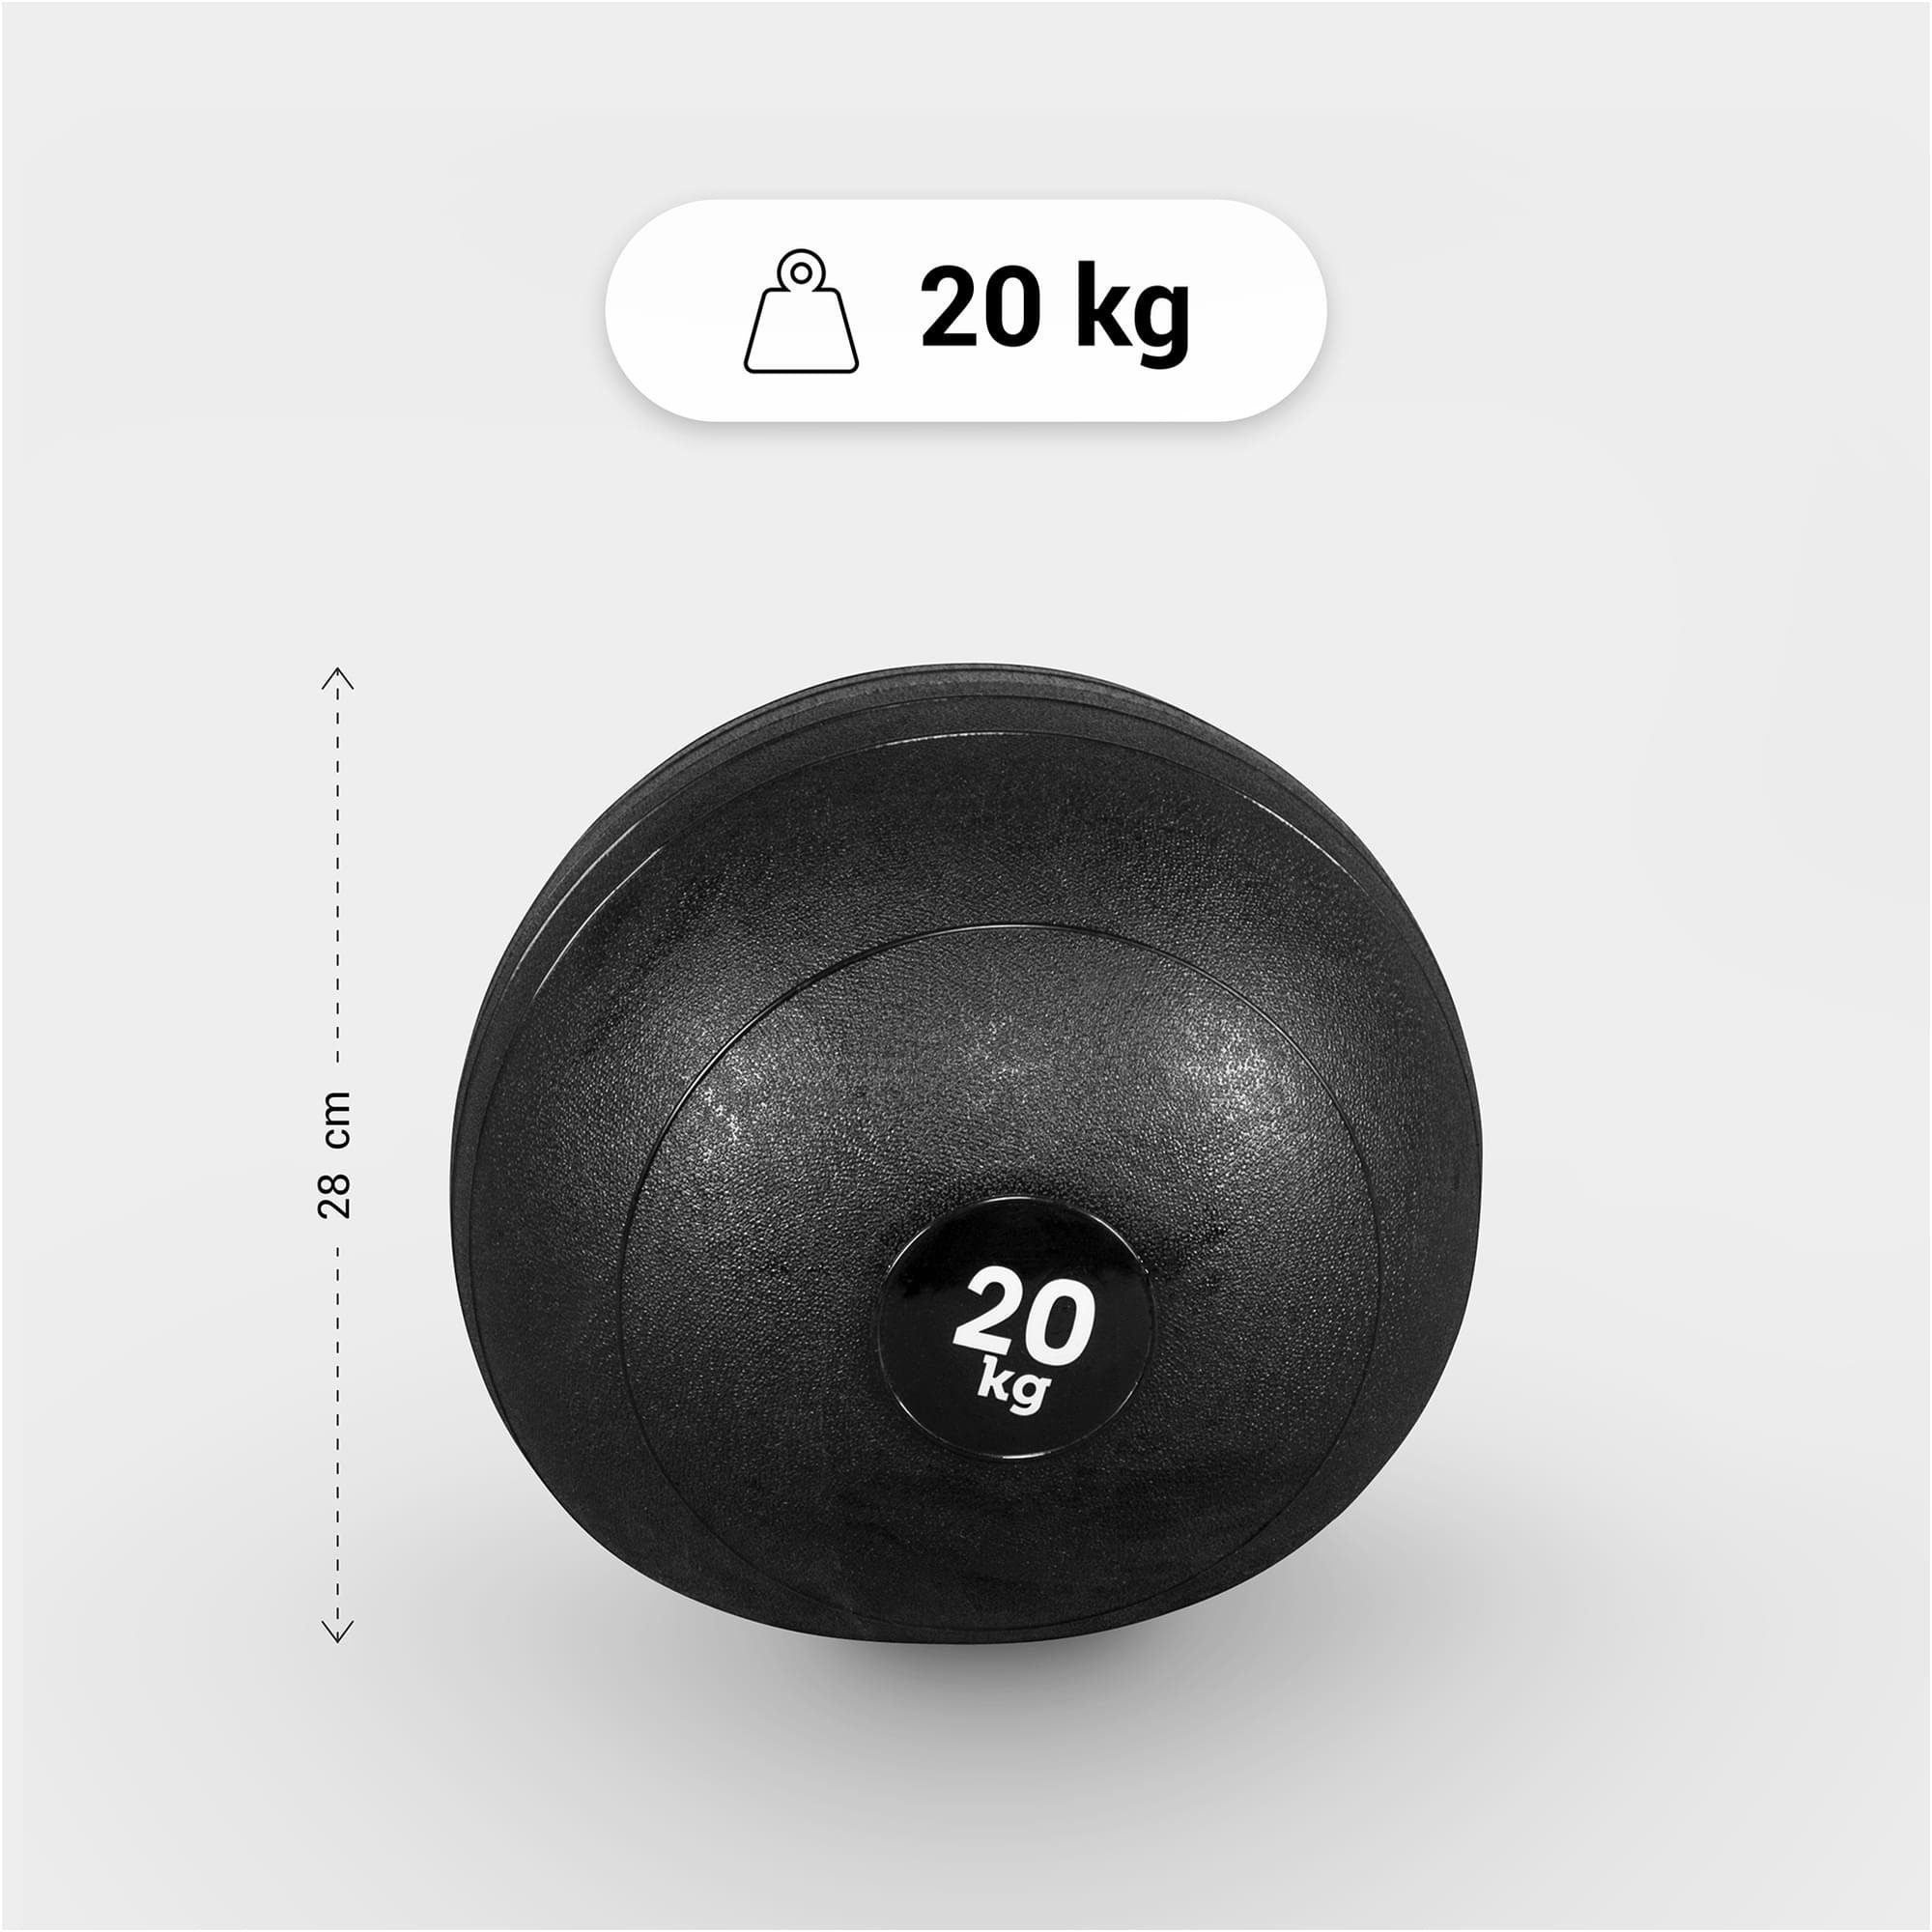 GORILLA Griffiger SPORTS Oberfläche 20kg, 5kg, 3kg, 7kg, mit Einzeln/Set, 15kg, 10kg, Medizinball